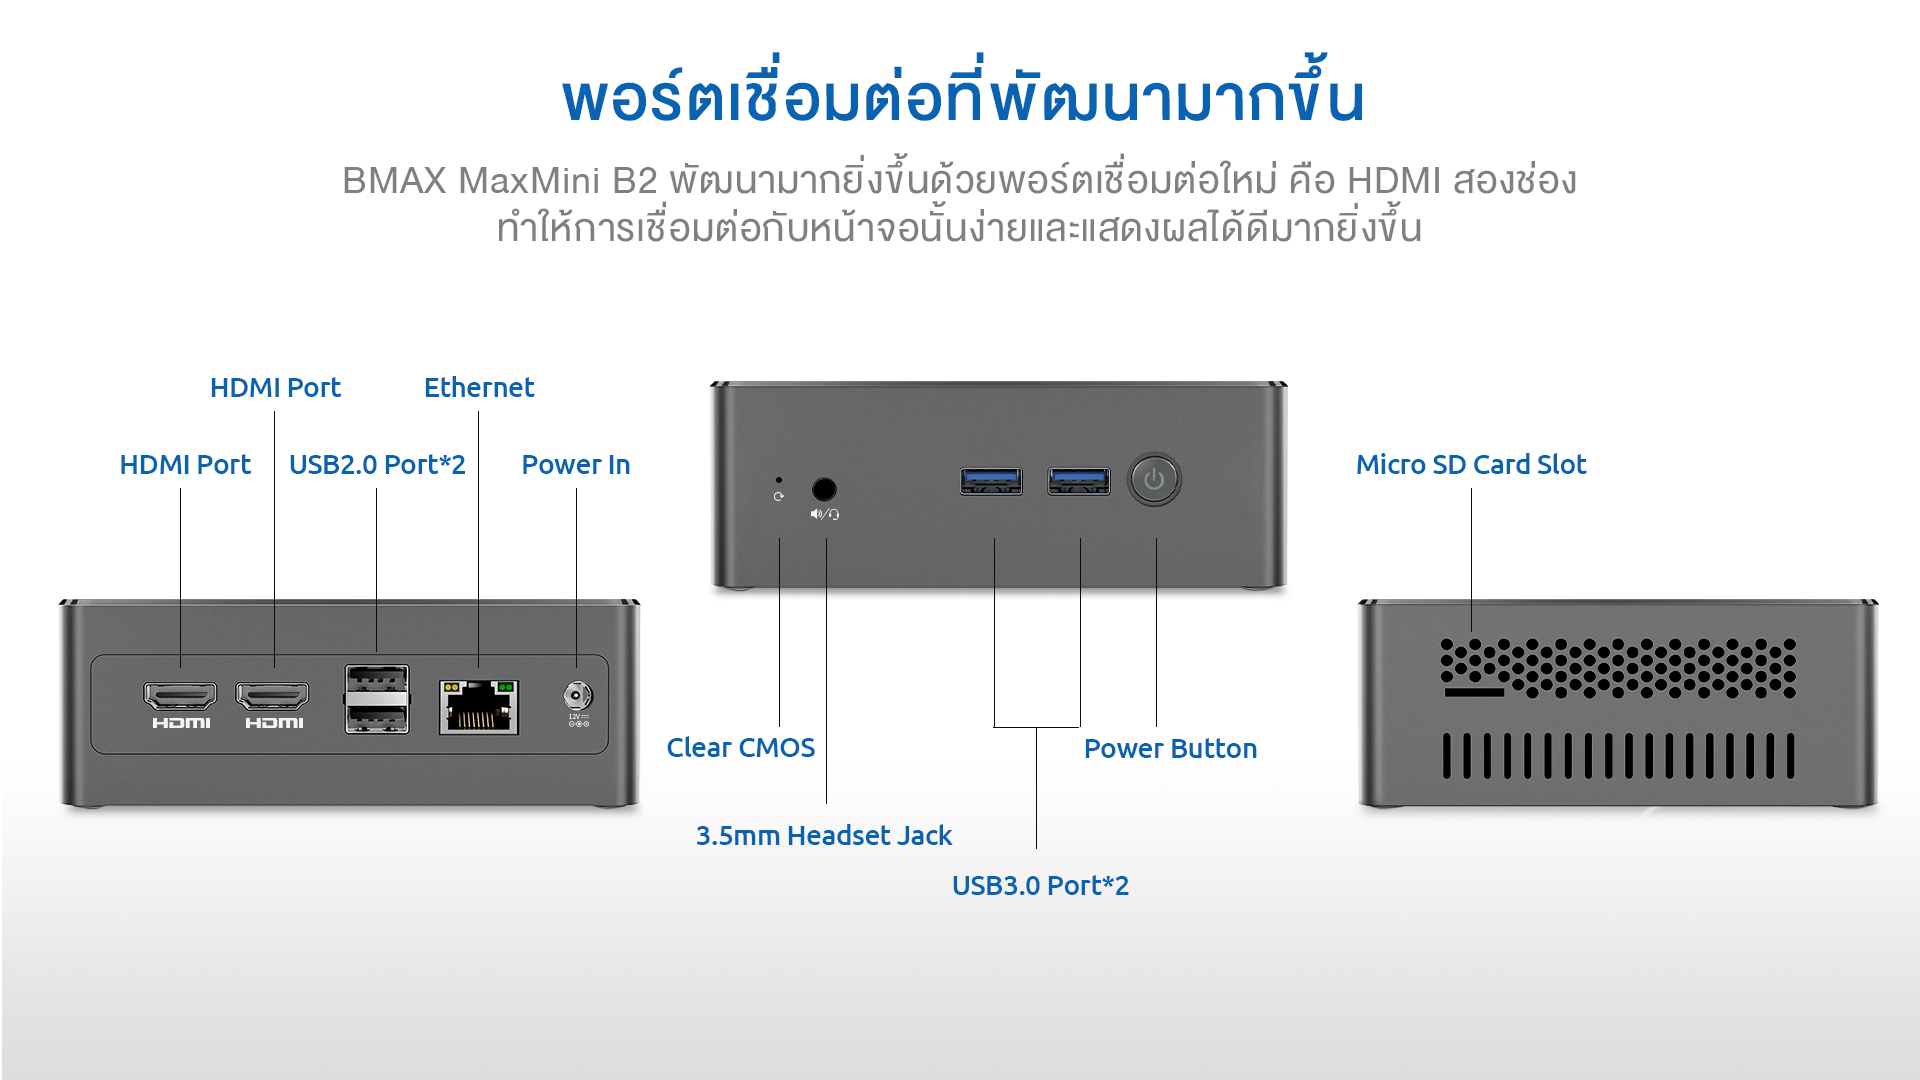 คำอธิบายเพิ่มเติมเกี่ยวกับ BMAX B2 Mini PC CPU Intel Quad Core 2.0GHz GPU Gen9 (18-EUs) RAM 8GB SSD 256GB Expand 2.5" HDD/SSD 1 Year Warranty in Thai